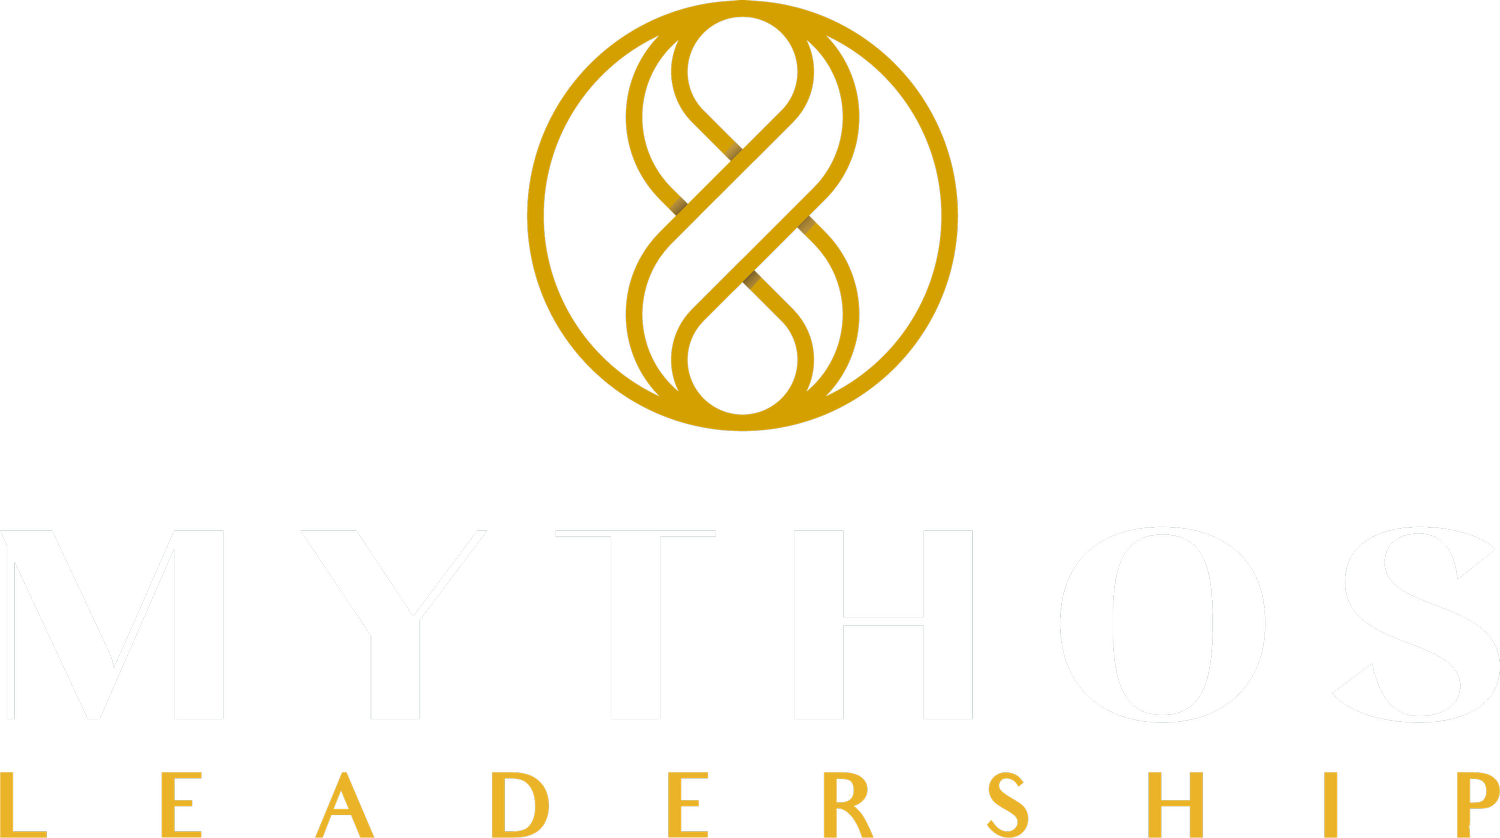 Mythos Leadership